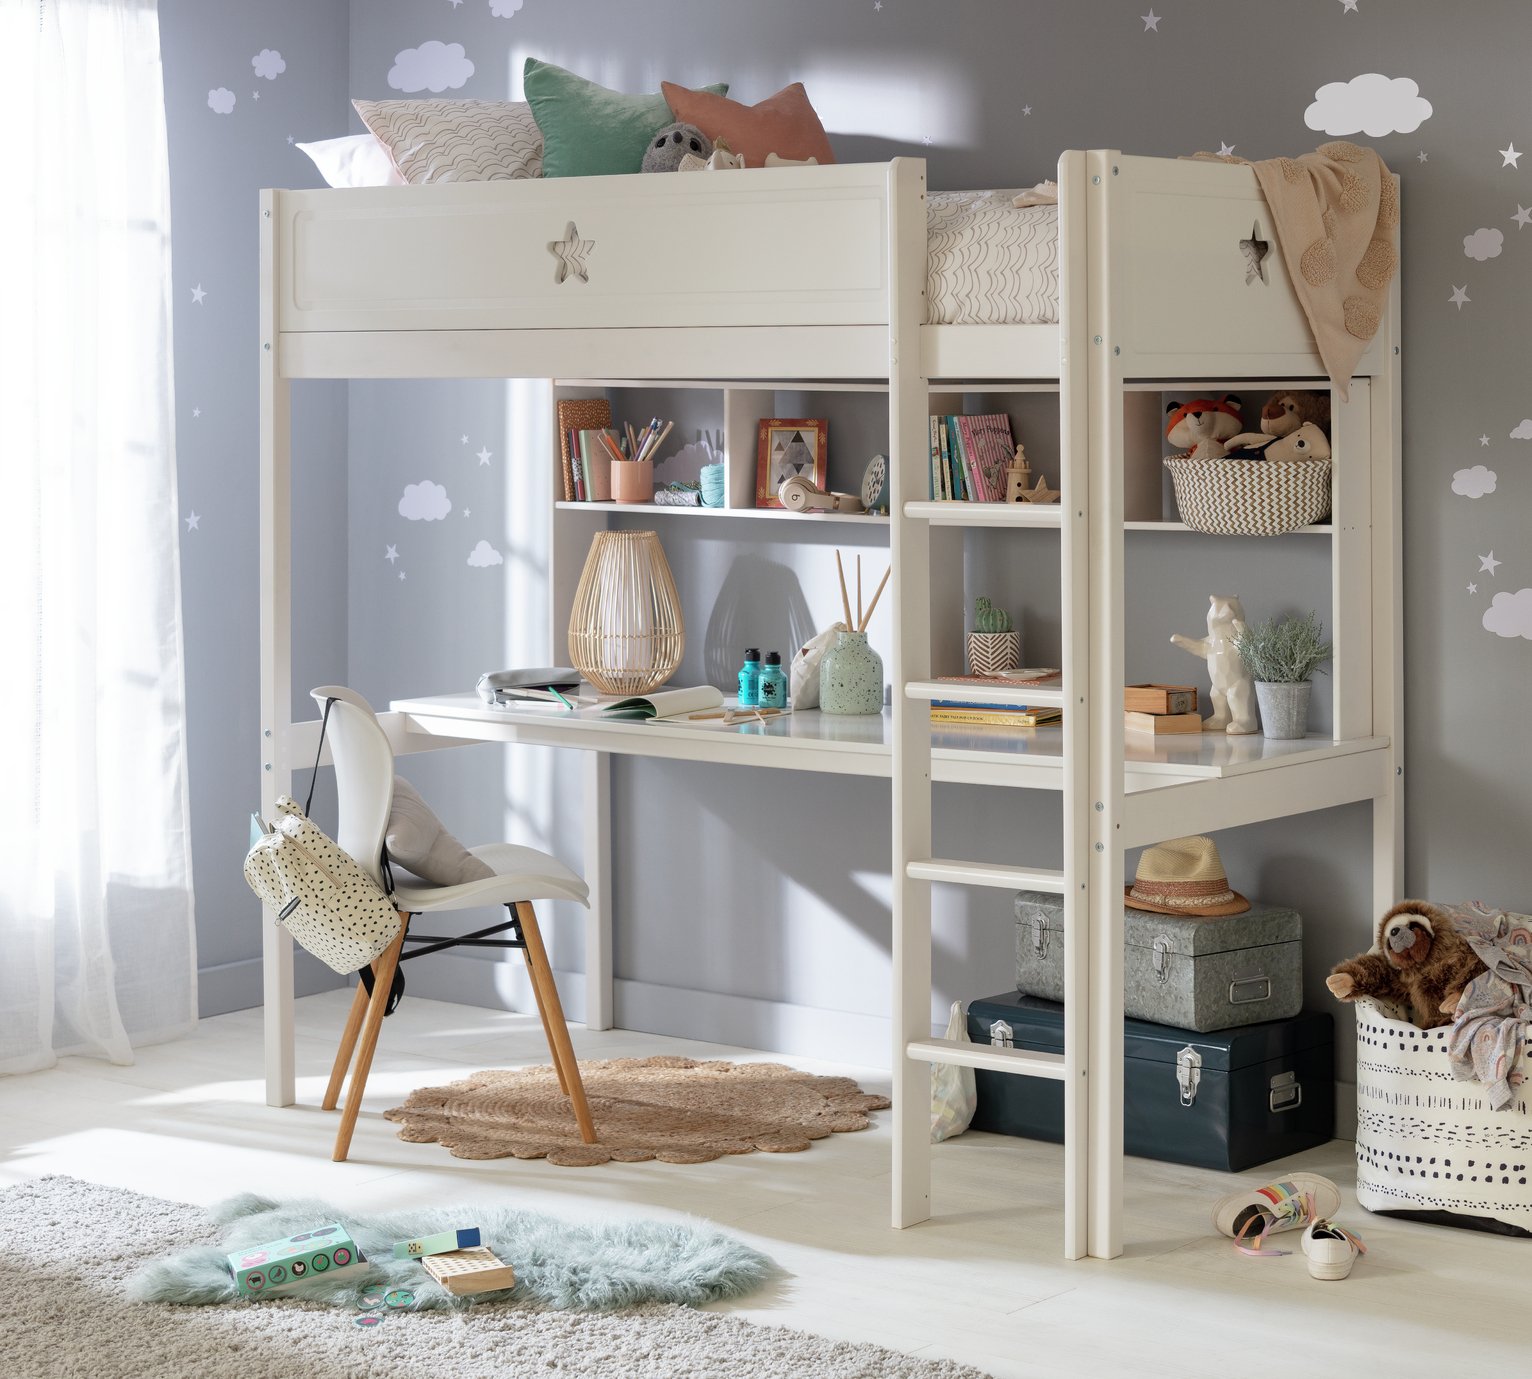 Argos Home Kids Stars High Sleeper Bed,Desk & Shelves- White